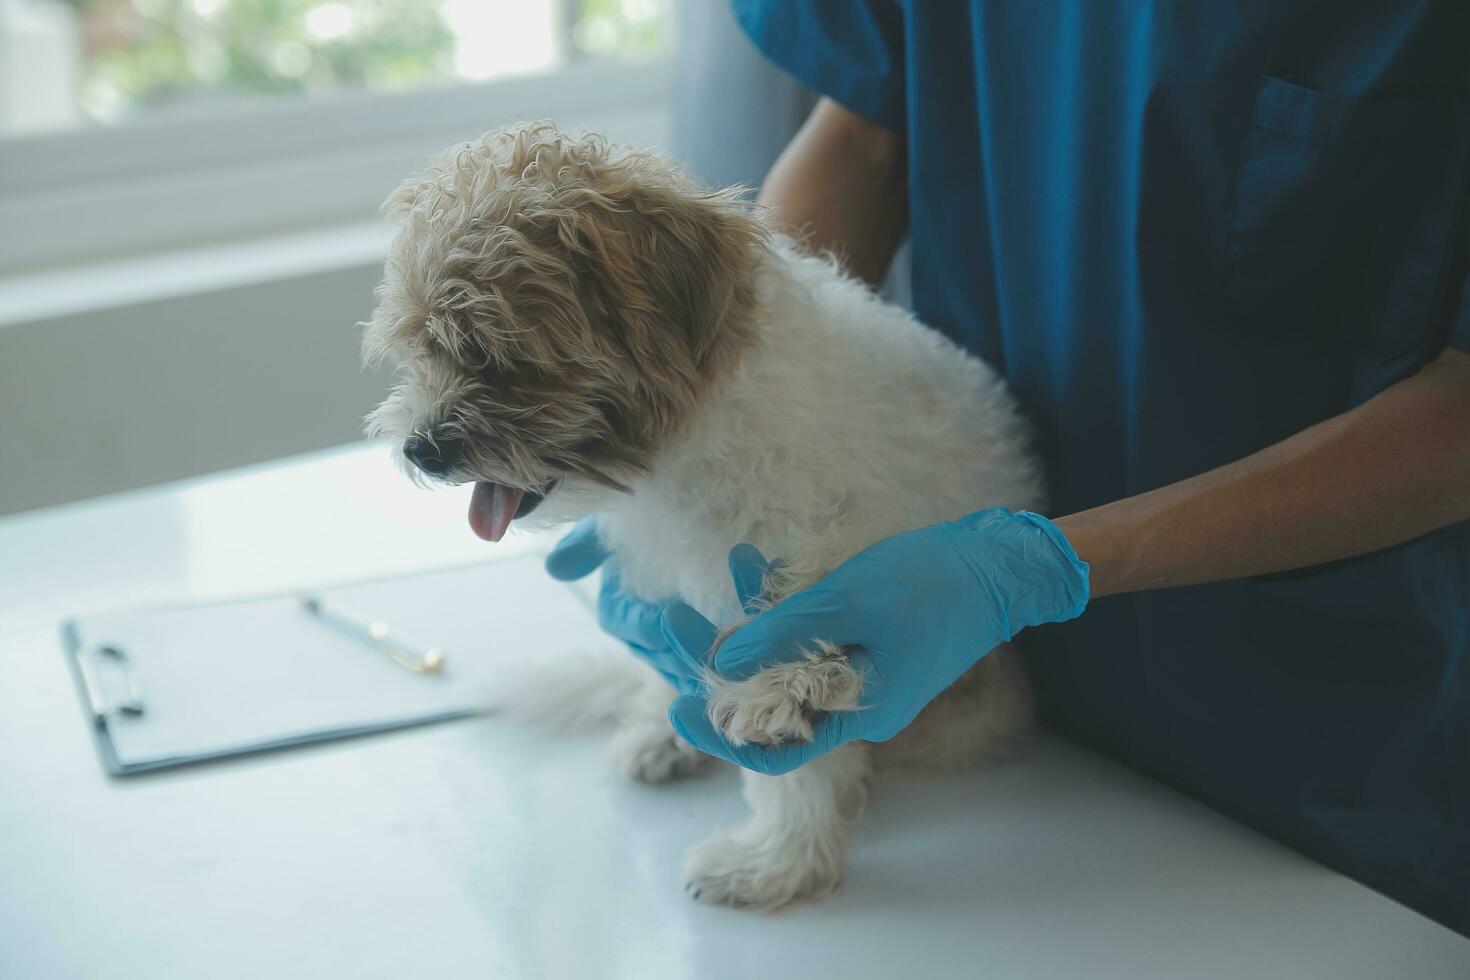 veterinario examinando perro y gato. perrito y gatito a veterinario doctor. animal clínica. mascota cheque arriba y vacunación. salud cuidado. foto